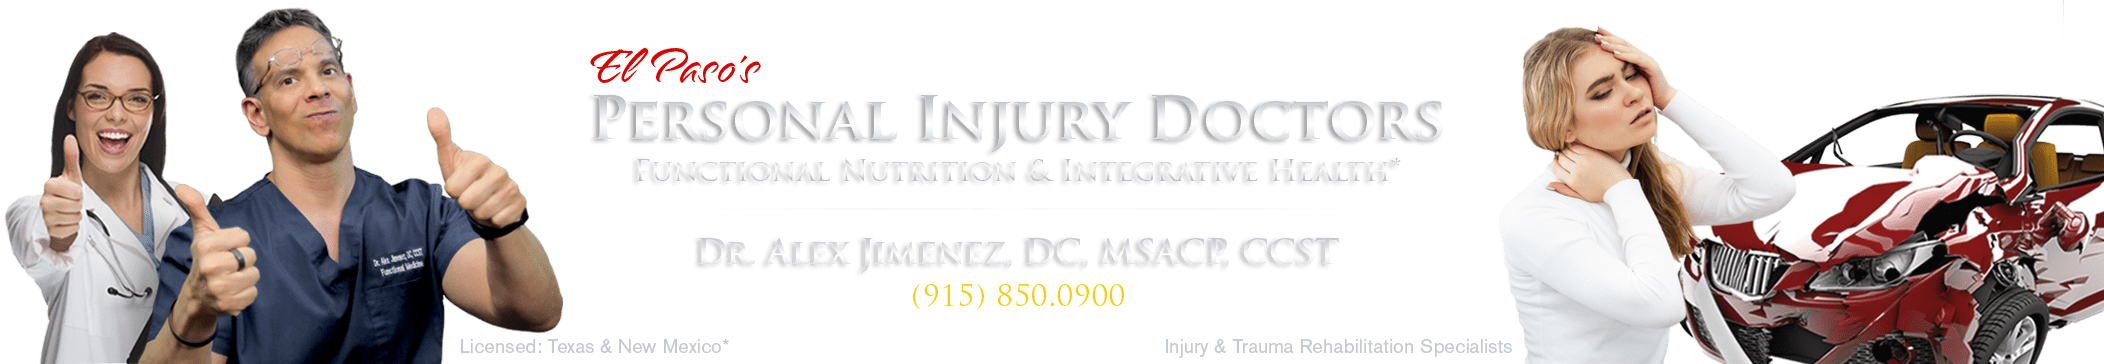 El Paso's Injury DoctorsÂ® 915-850-0900